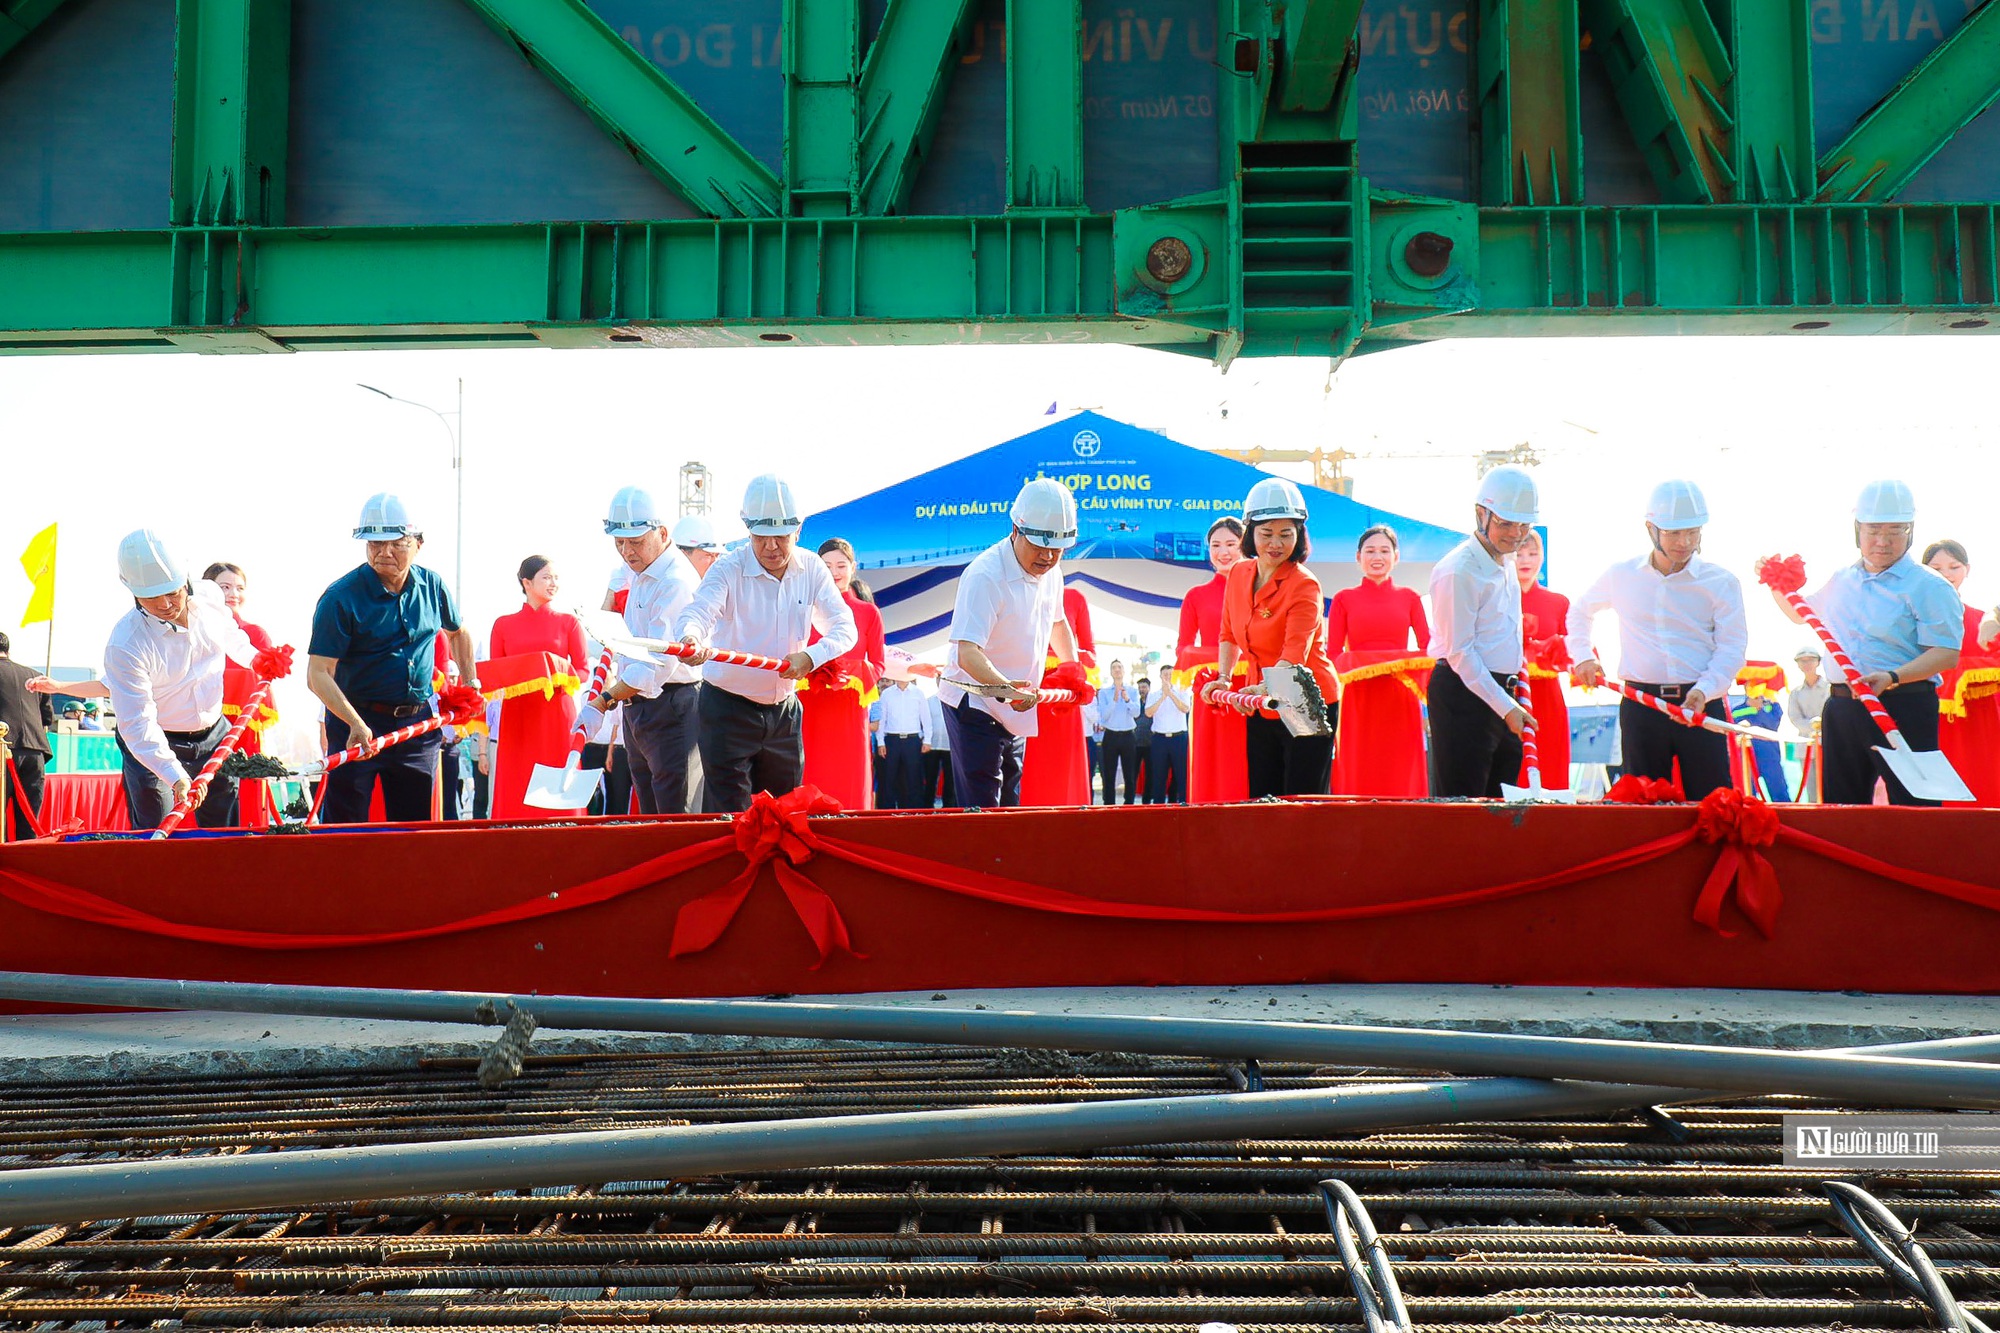 Hợp long cầu Vĩnh Tuy 2 trị giá hơn 2.500 tỷ đồng ở Hà Nội - Ảnh 4.